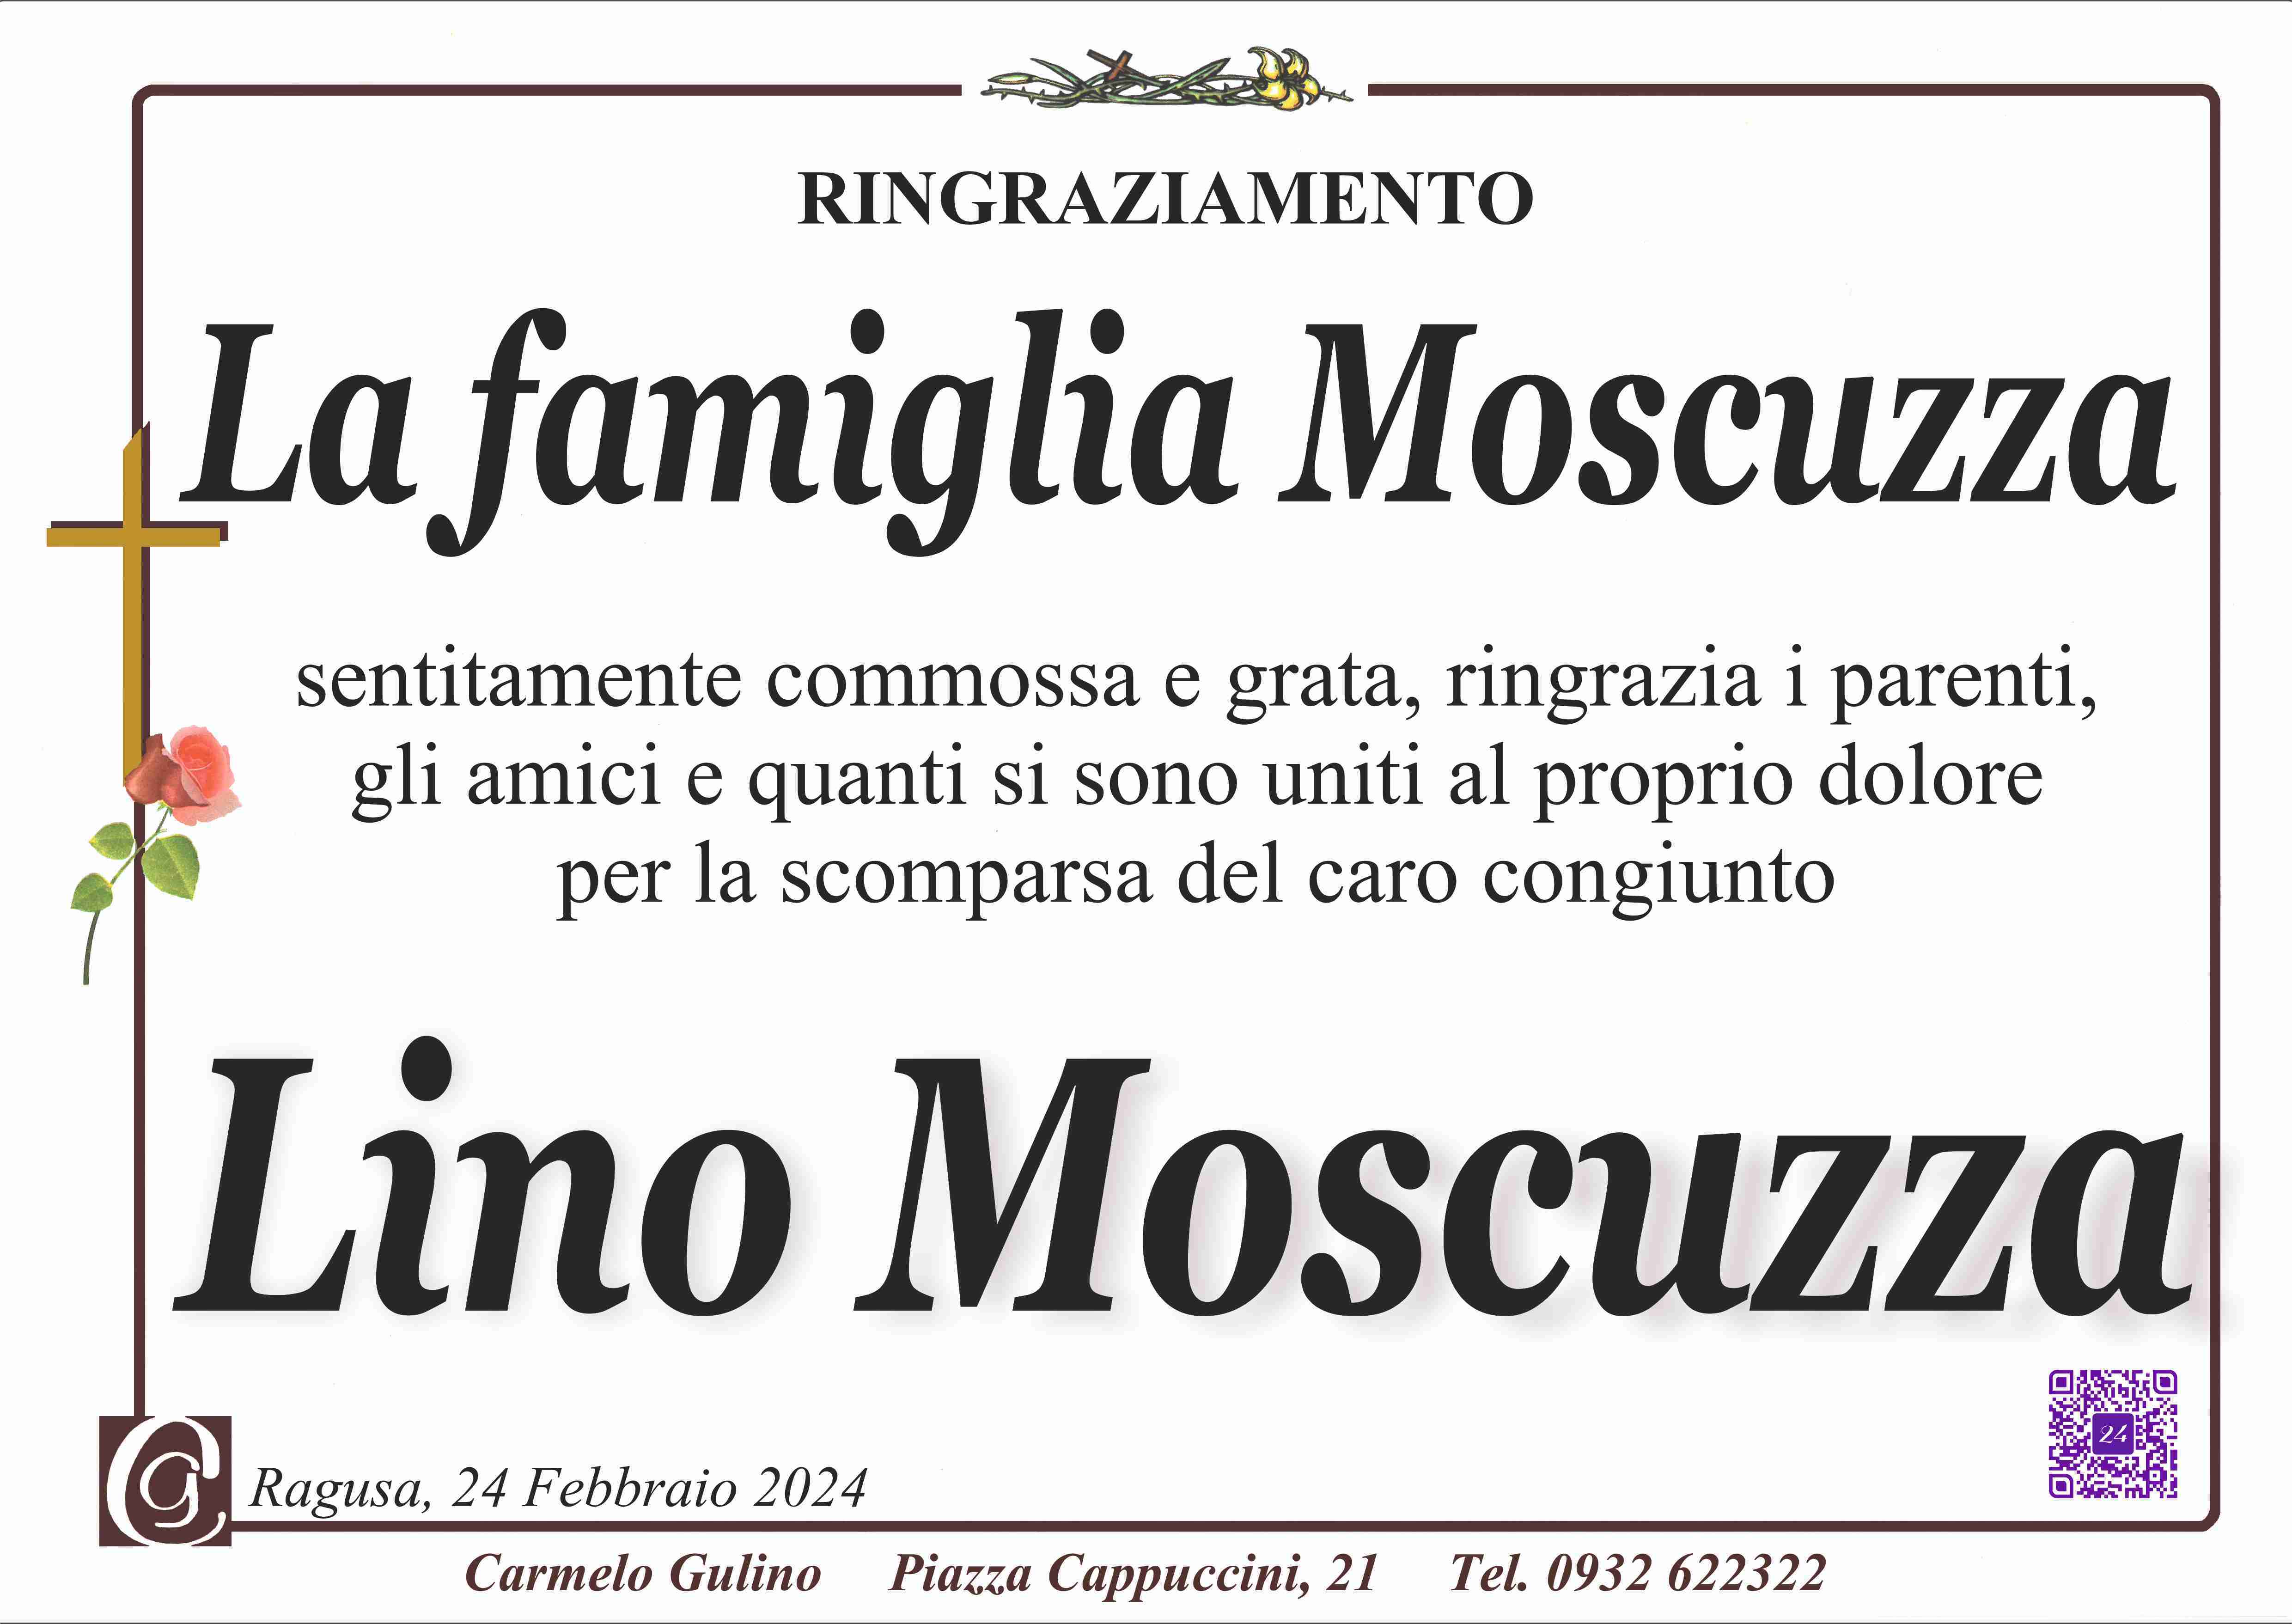 Lino Moscuzza